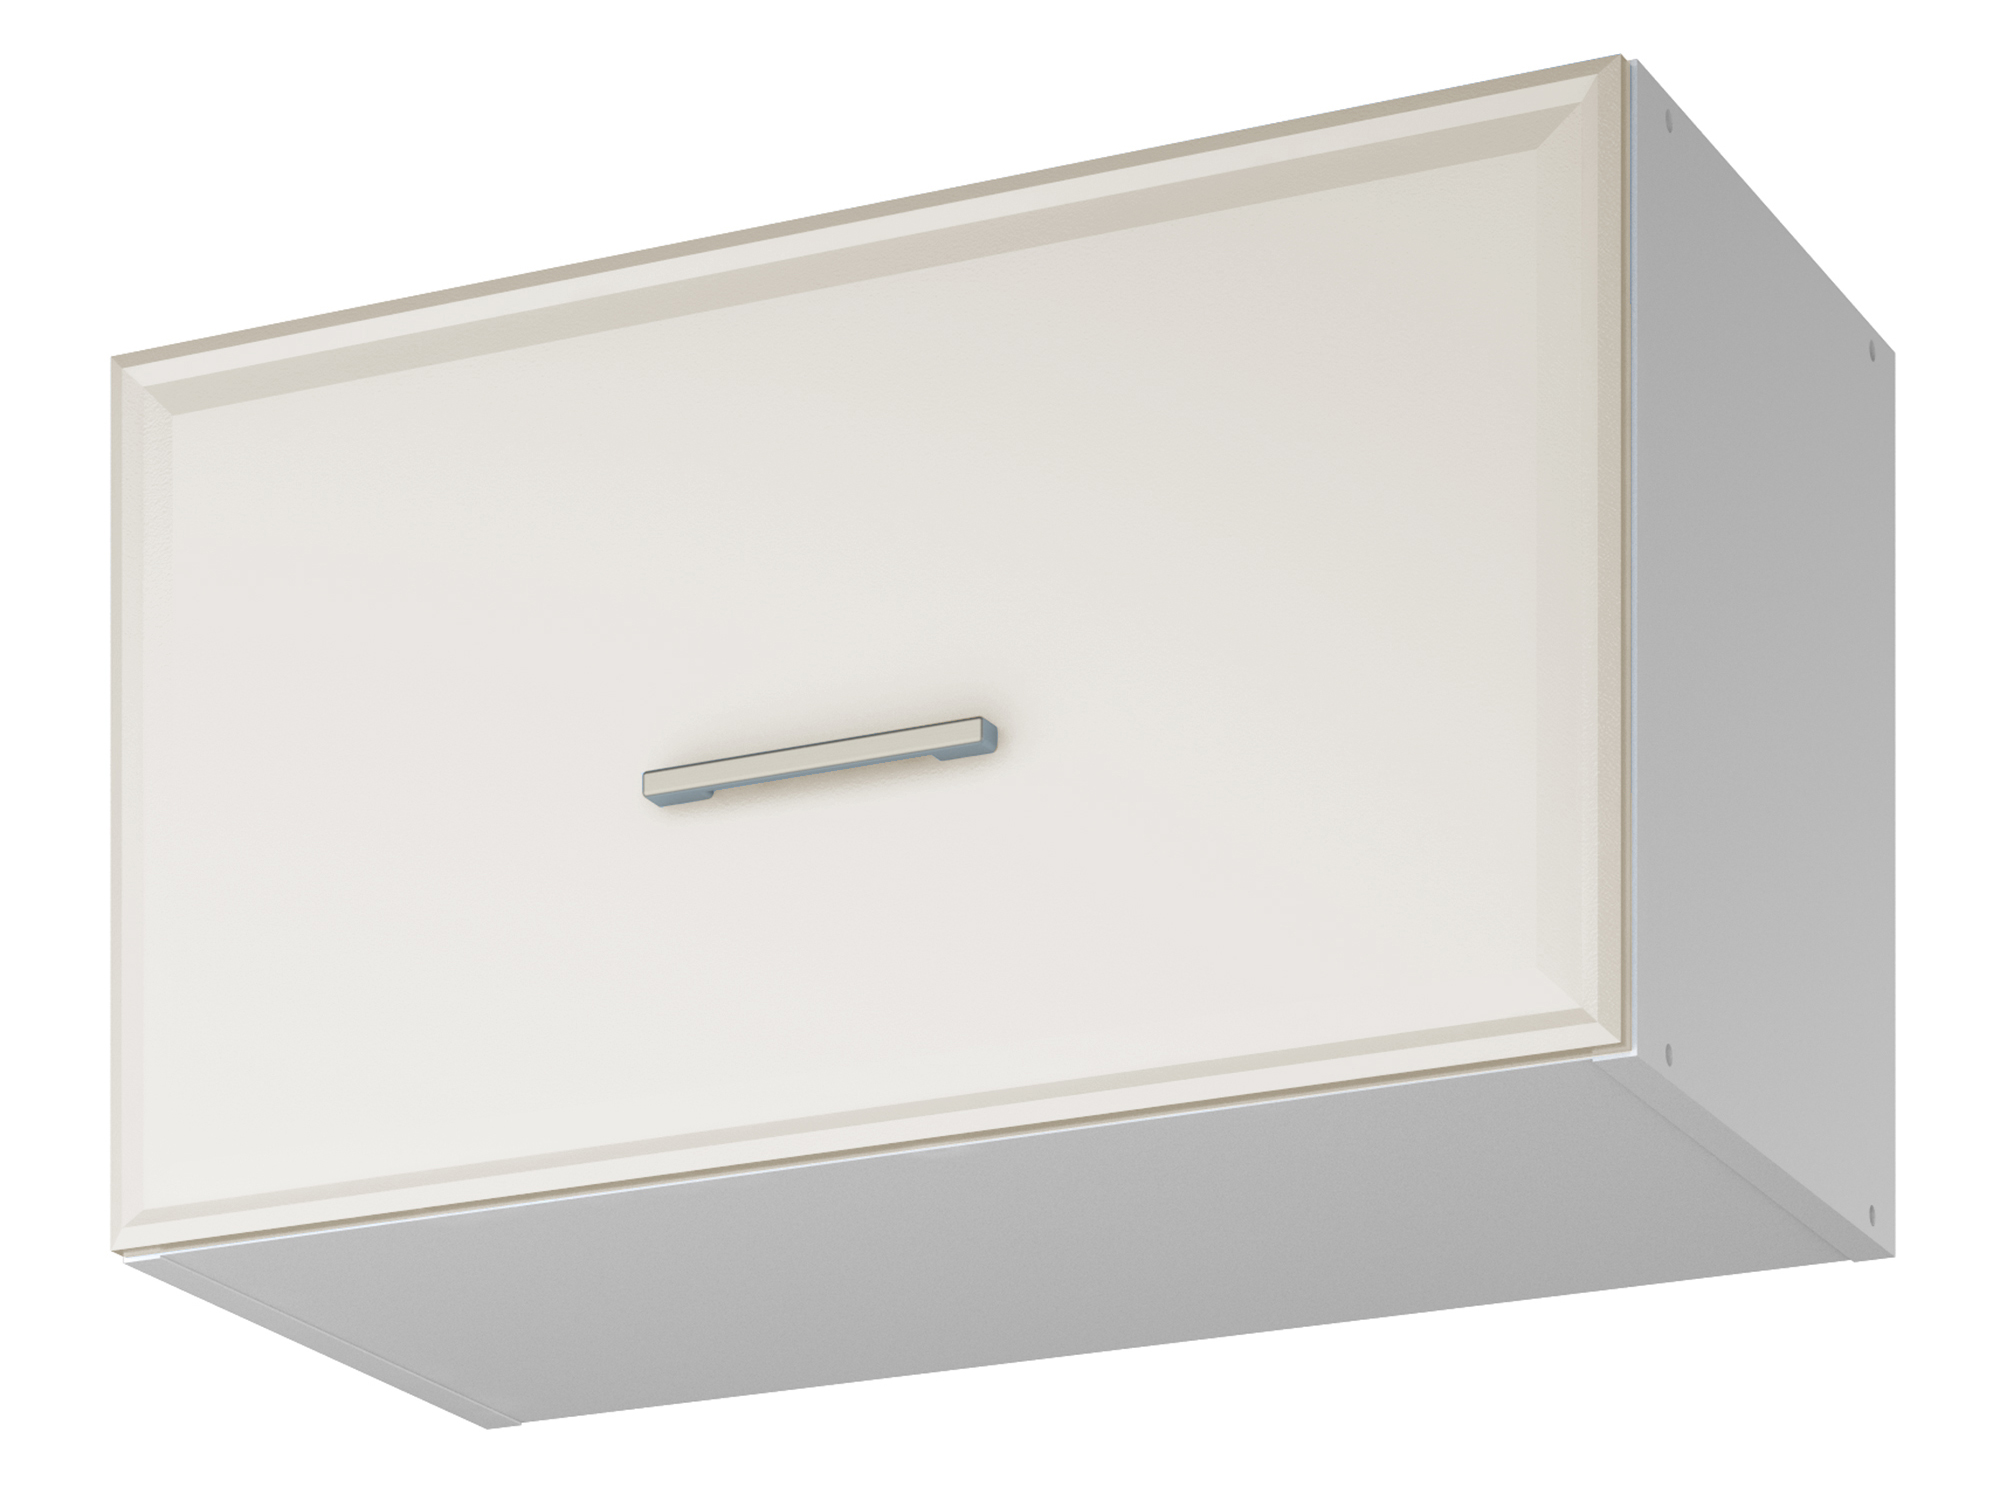 Шкаф навесной для вытяжки Greta 60 см Светлый, , Белый, МДФ, ЛДСП шкаф навесной greta 60 см светлый белый мдф лдсп